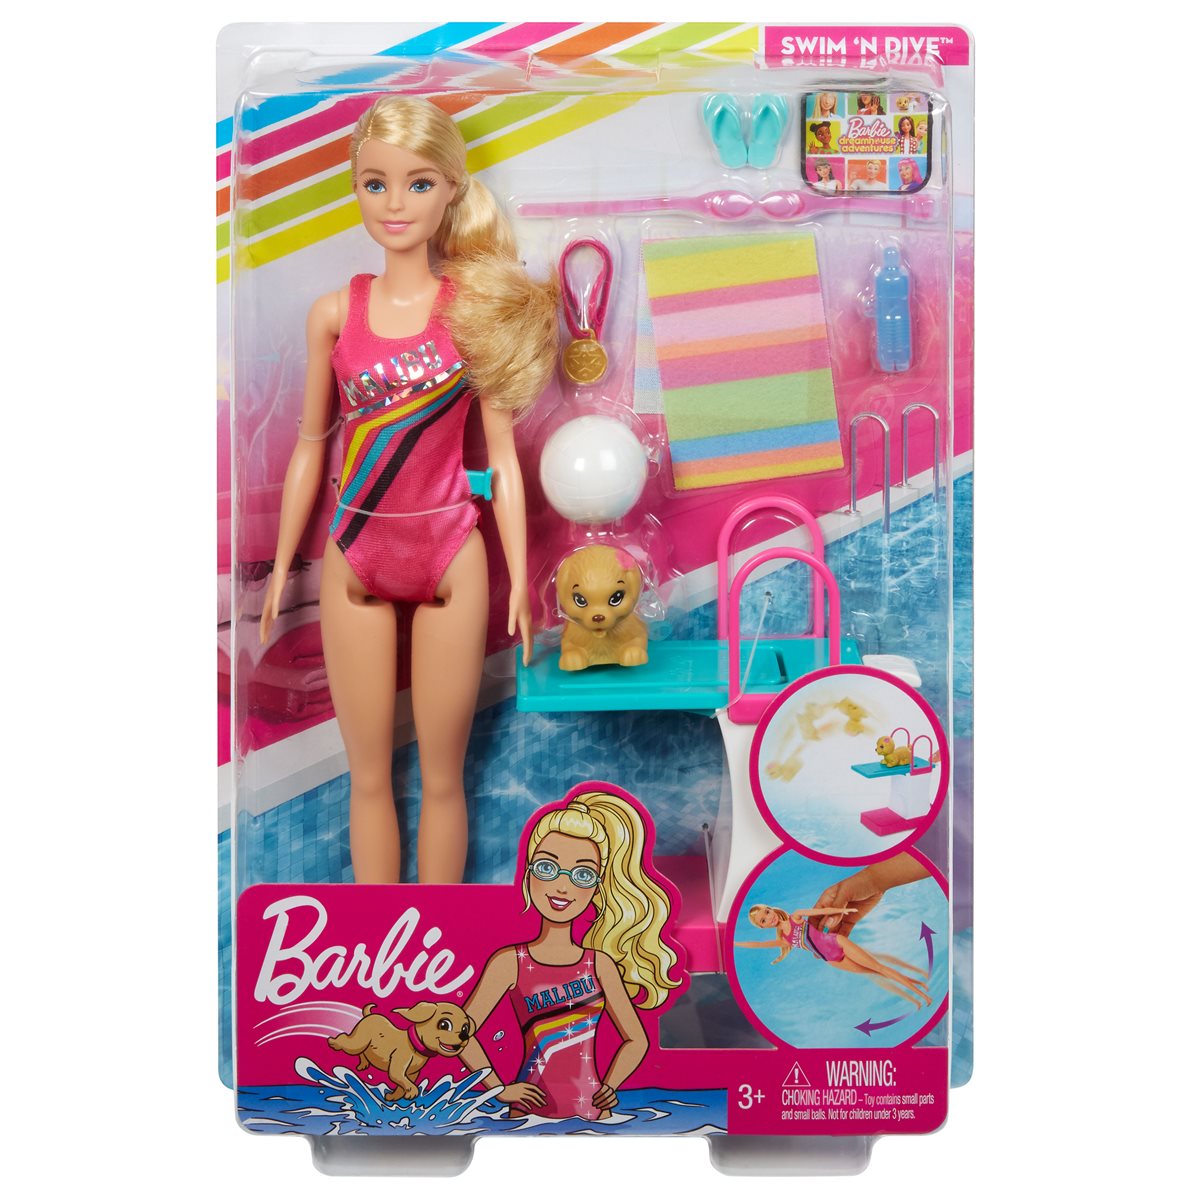 Barbie Dreamhouse aventures Swim 'n Dive poupée et accessoires 